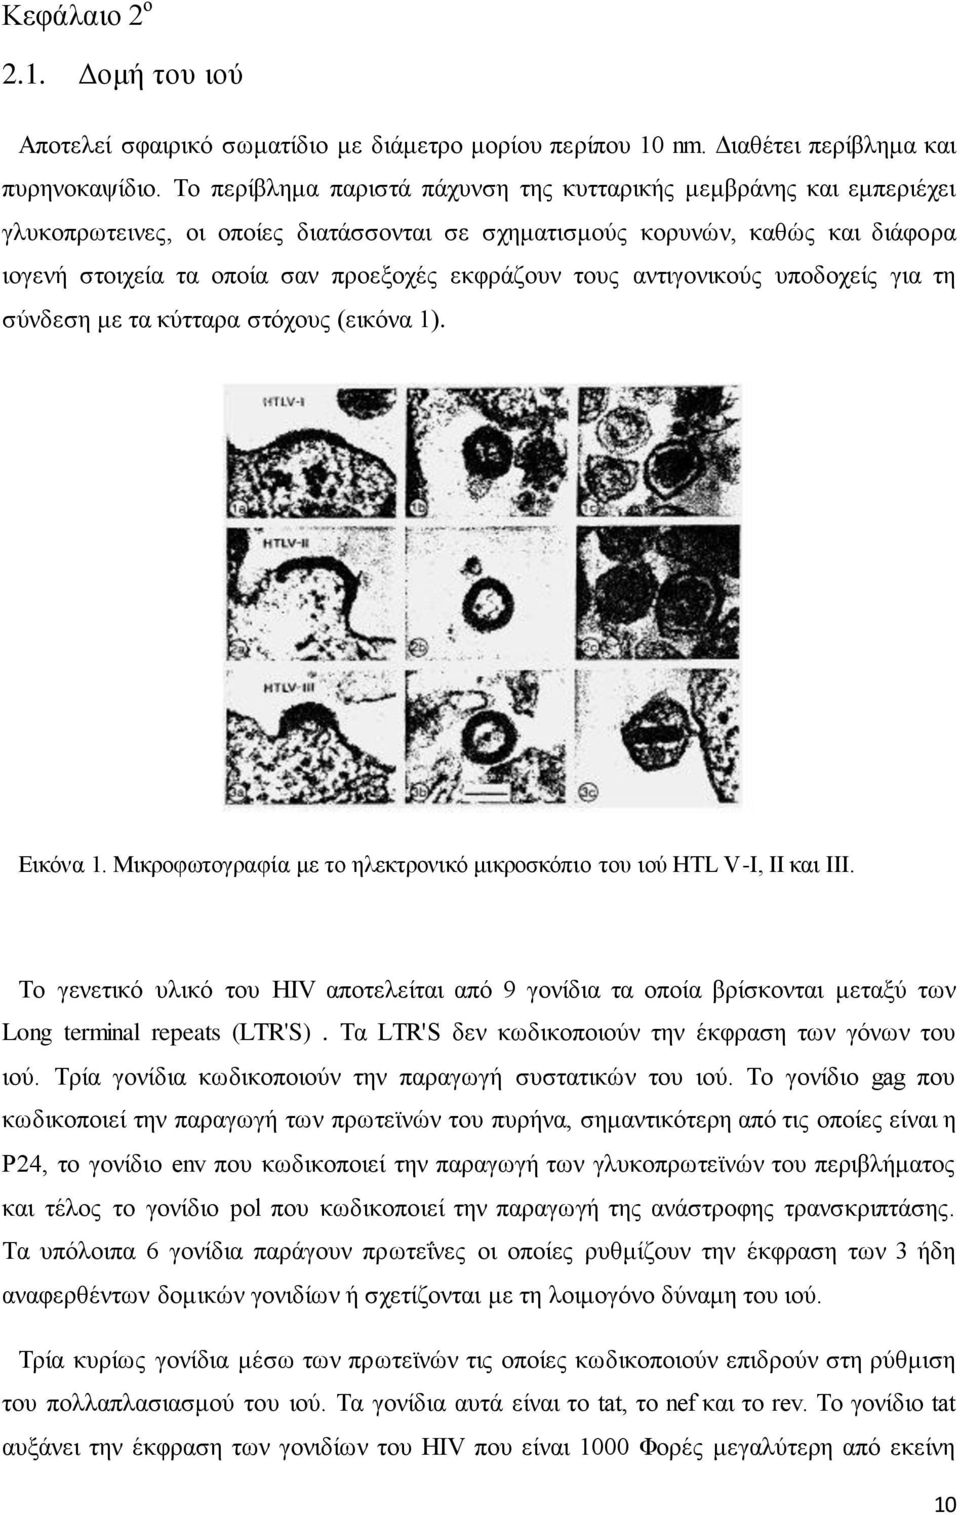 τους αντιγονικούς υποδοχείς για τη σύνδεση με τα κύτταρα στόχους (εικόνα 1). Εικόνα 1. Μικροφωτογραφία με το ηλεκτρονικό μικροσκόπιο του ιού HTL V-I, ΙΙ και ΙΙΙ.